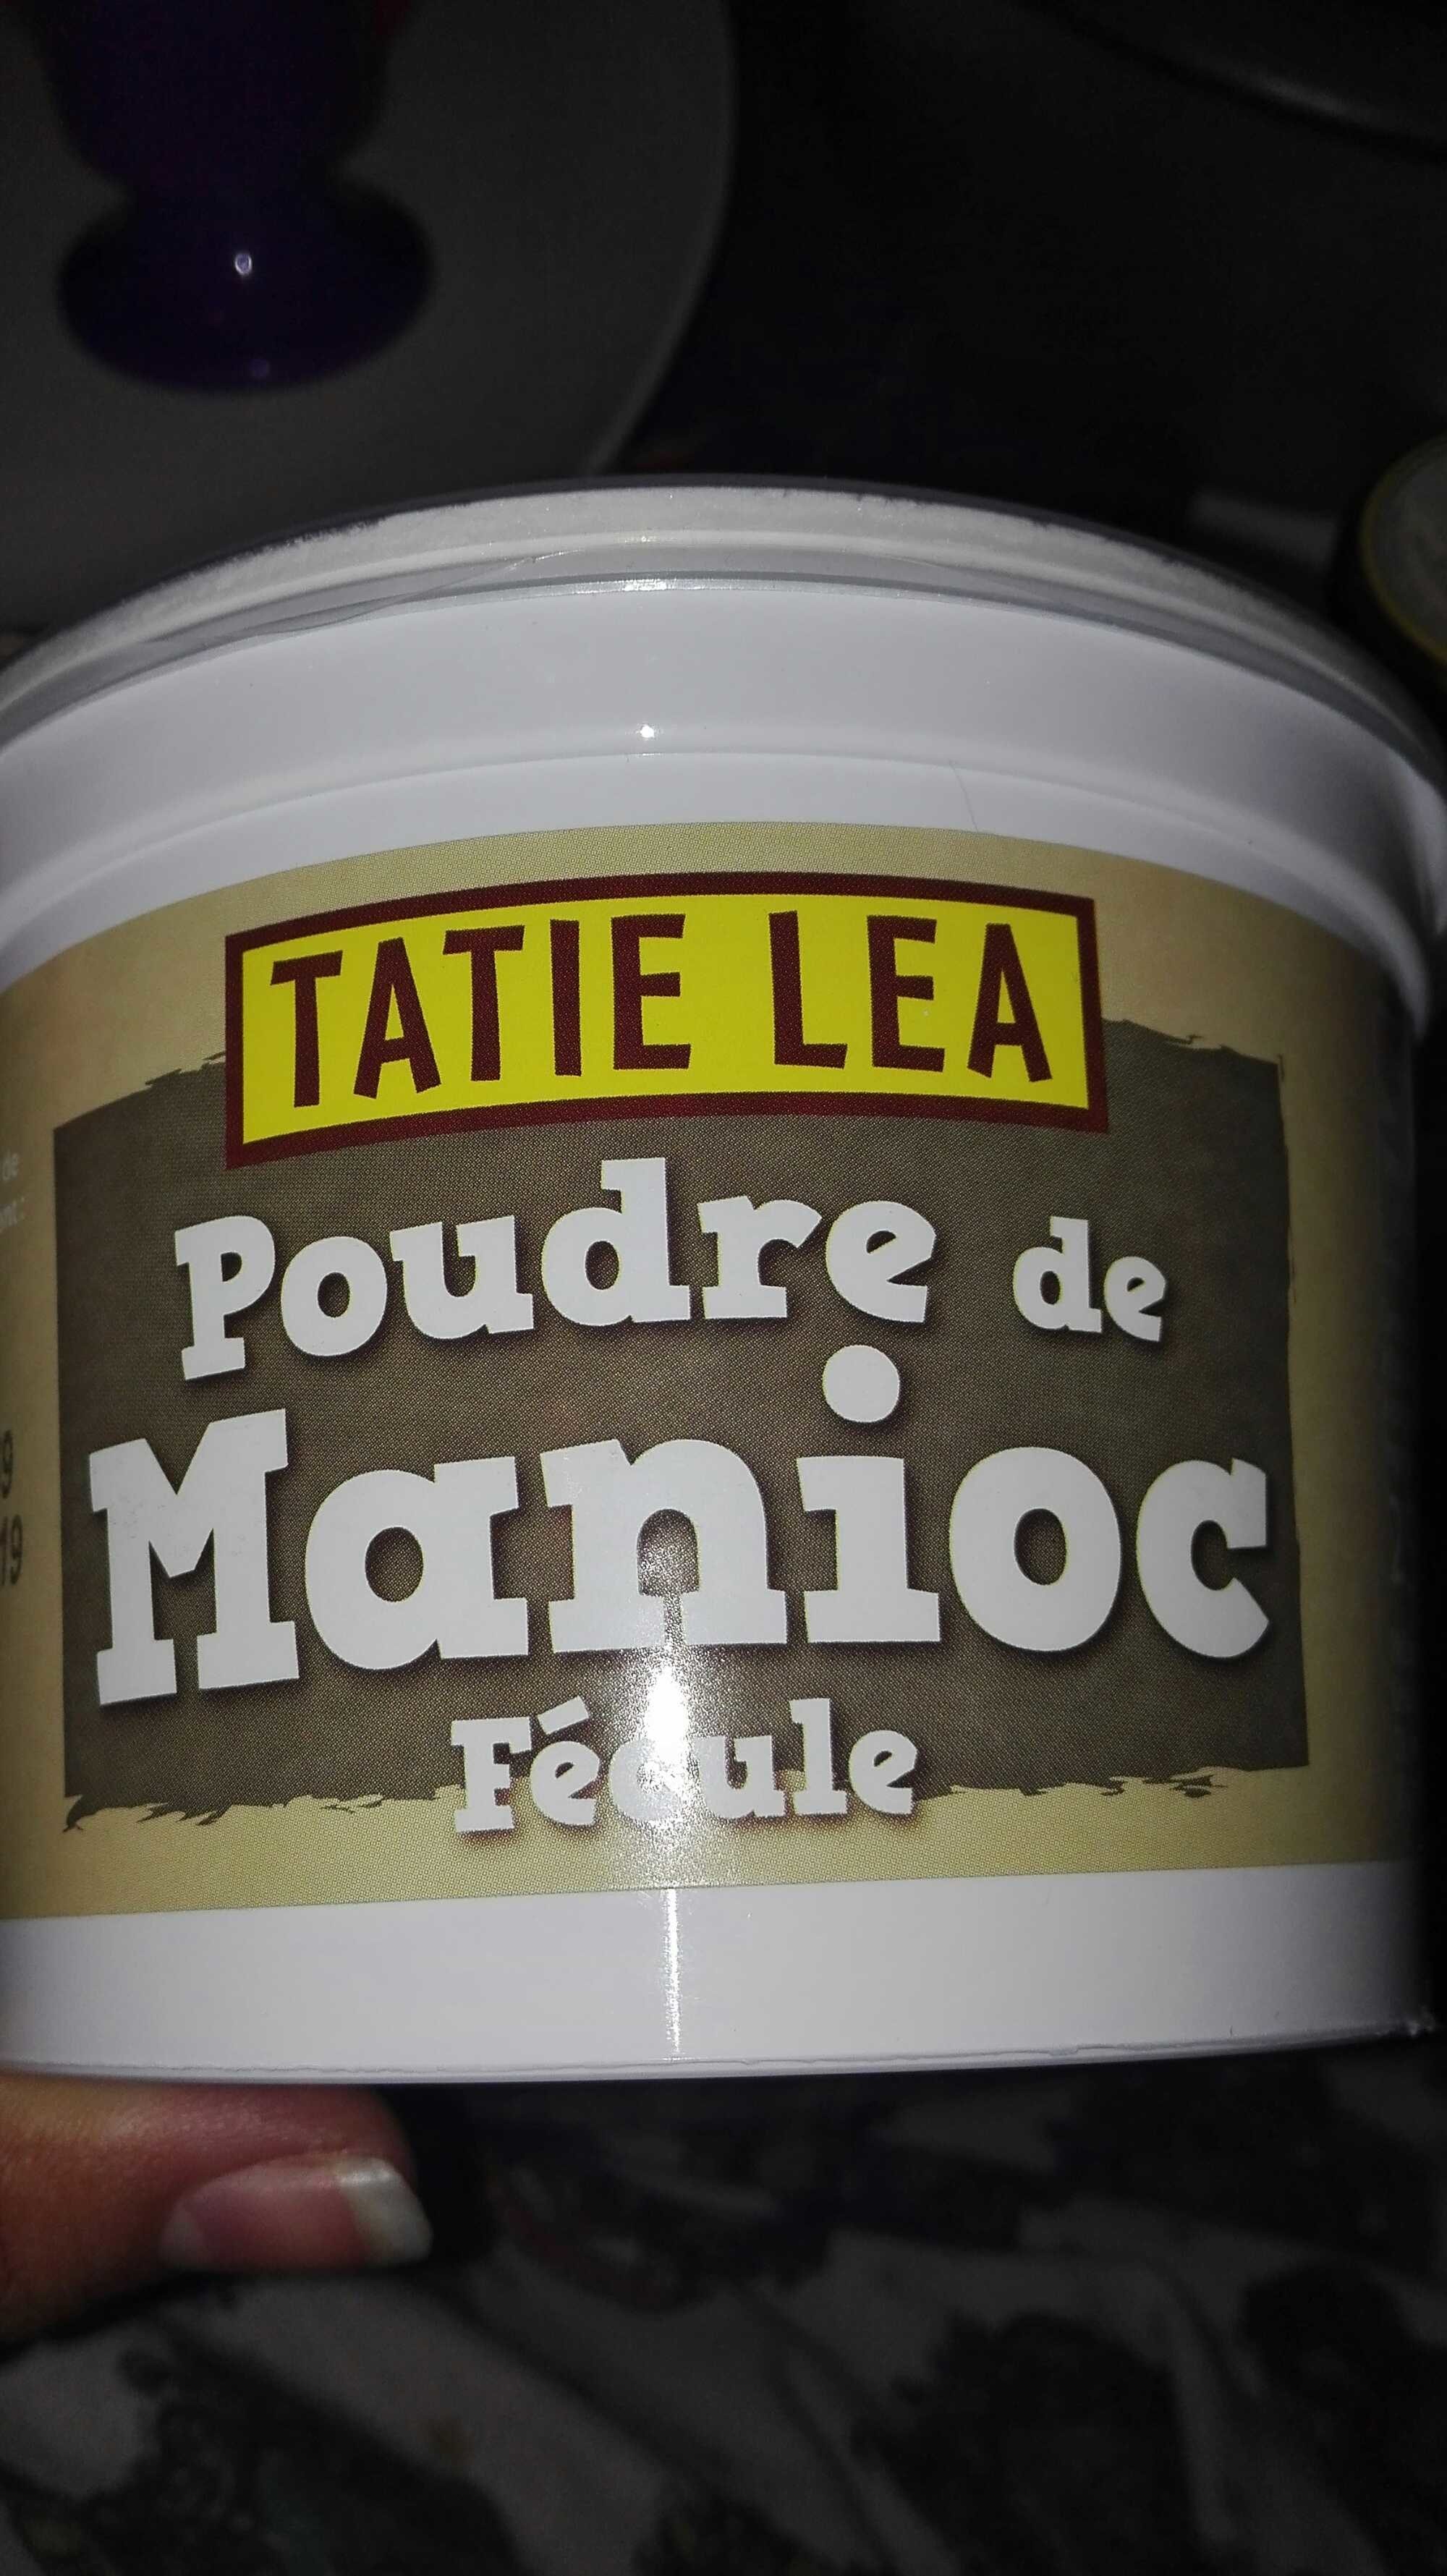 Poudre de Manioc, fécule - Product - fr